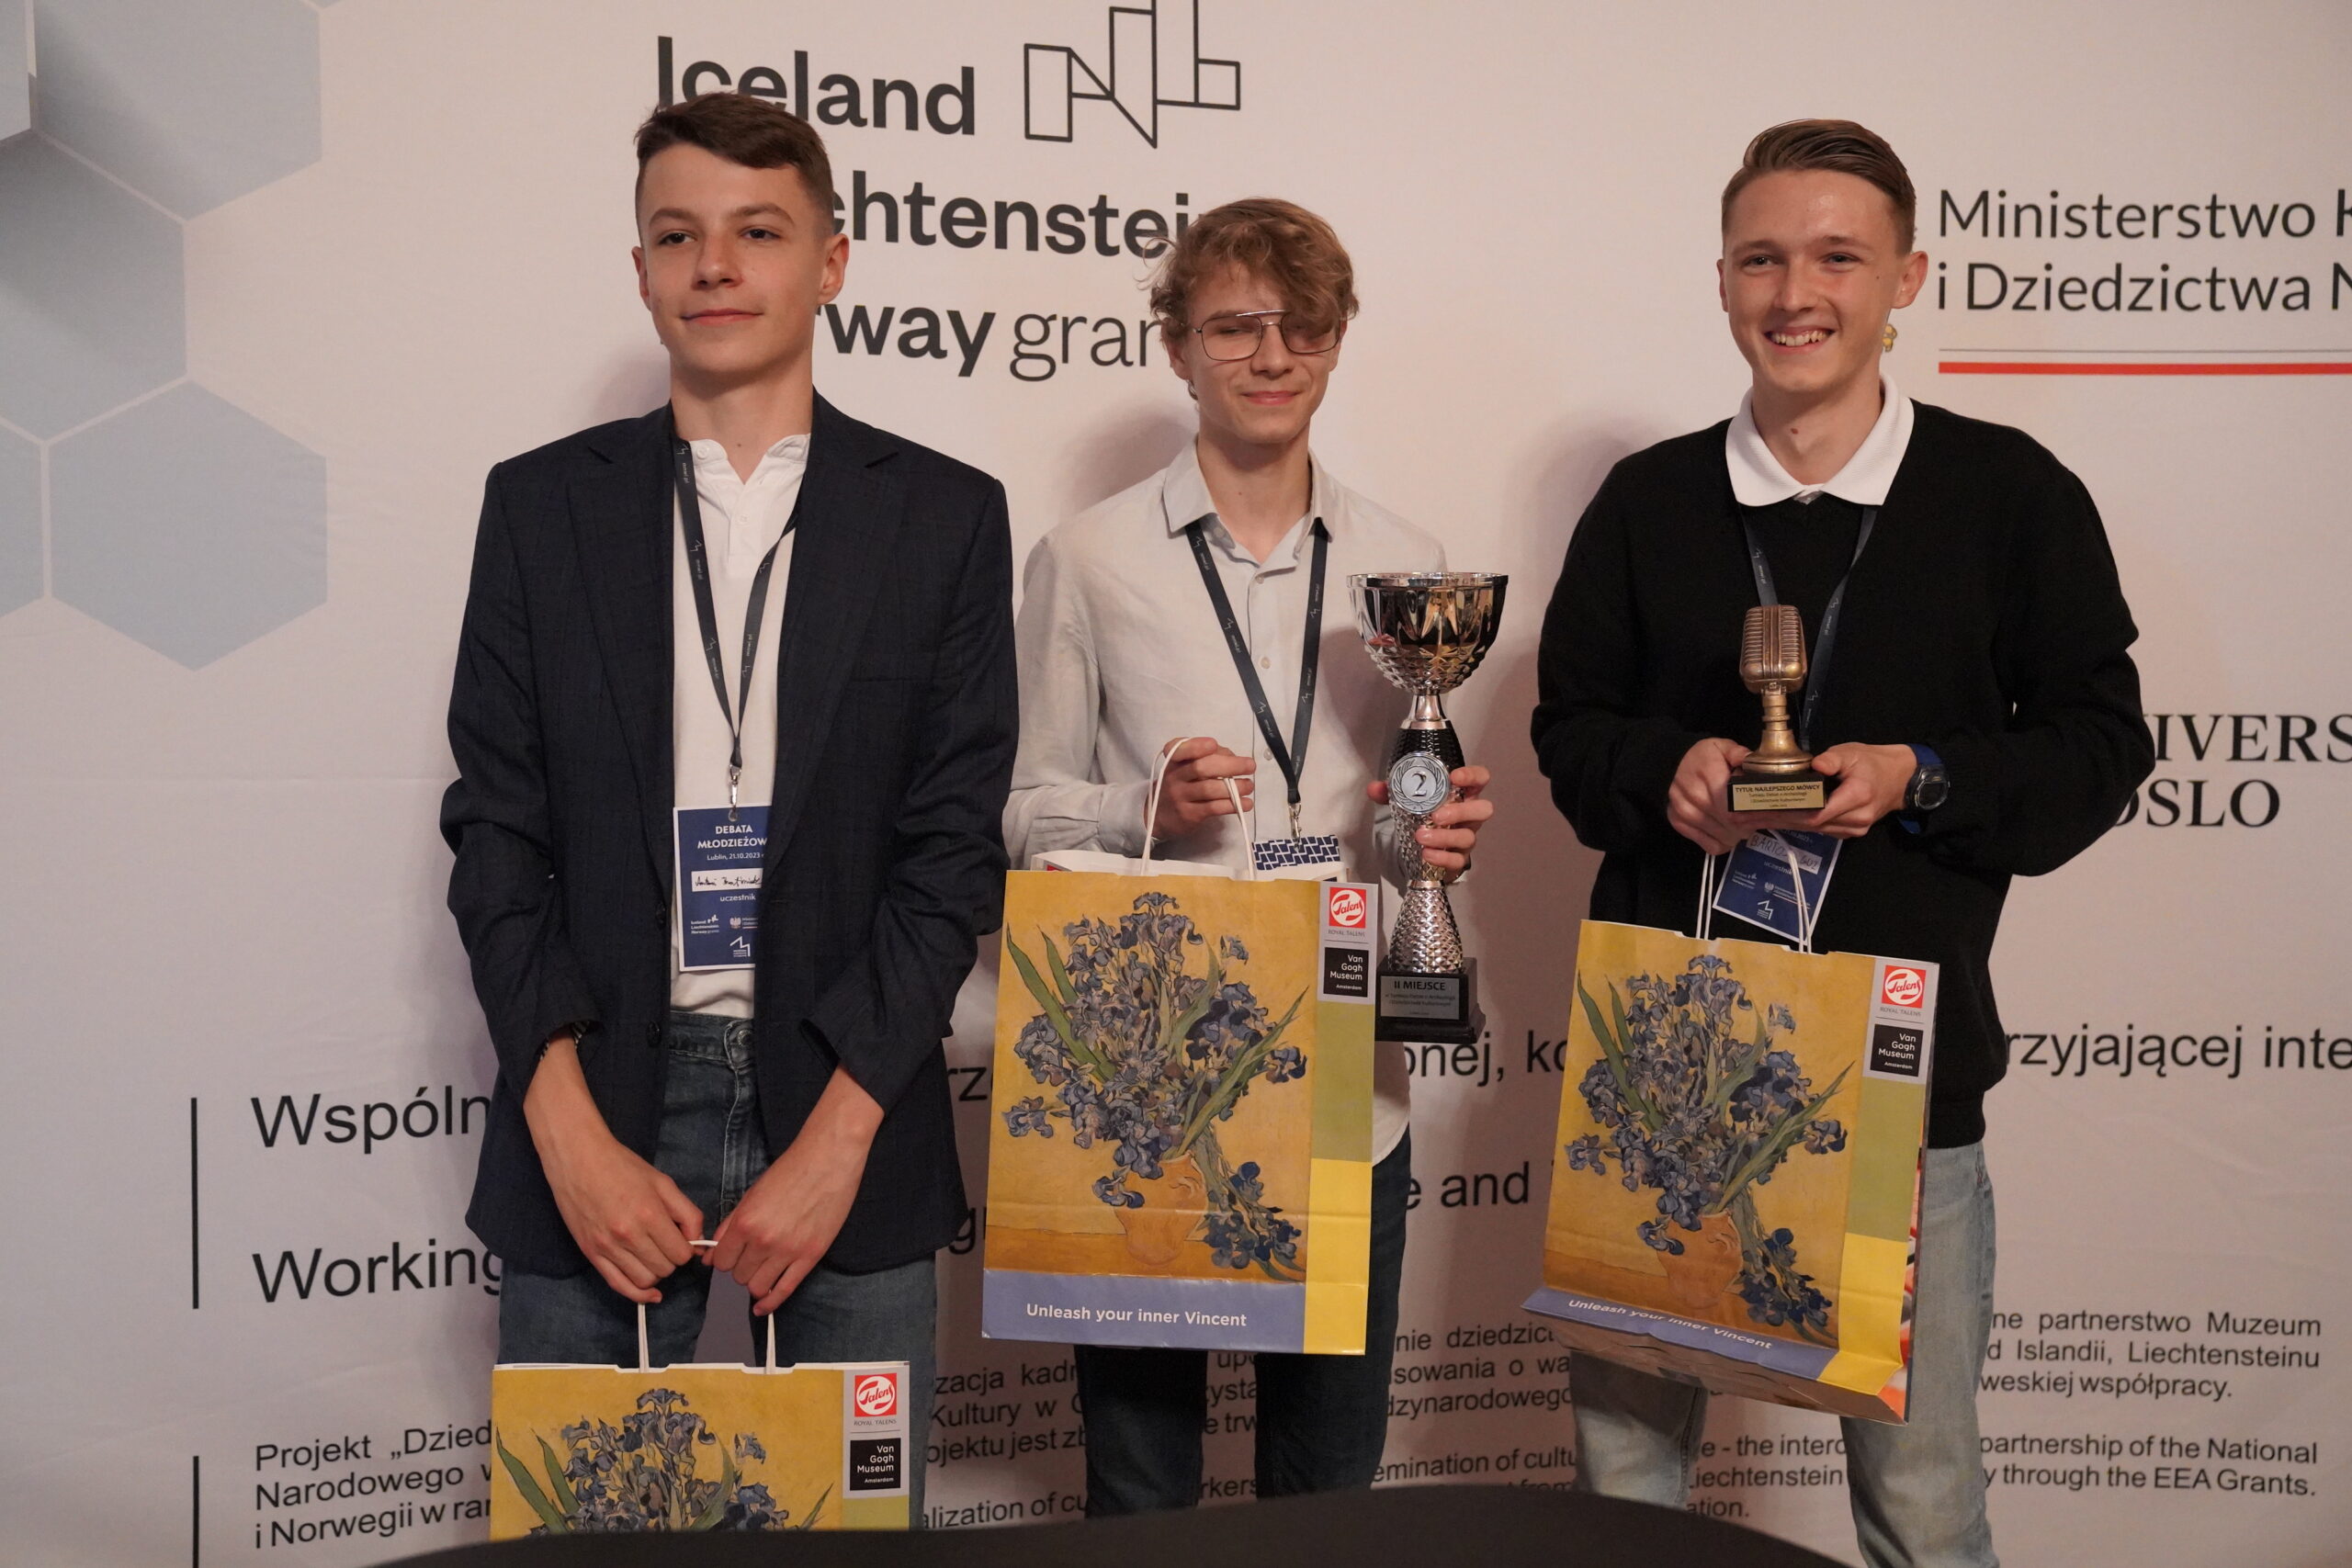 Zdjęcie zwycięskiej drużyny - trzech uśmiechniętych chłopaków trzymających w rękach nagrody